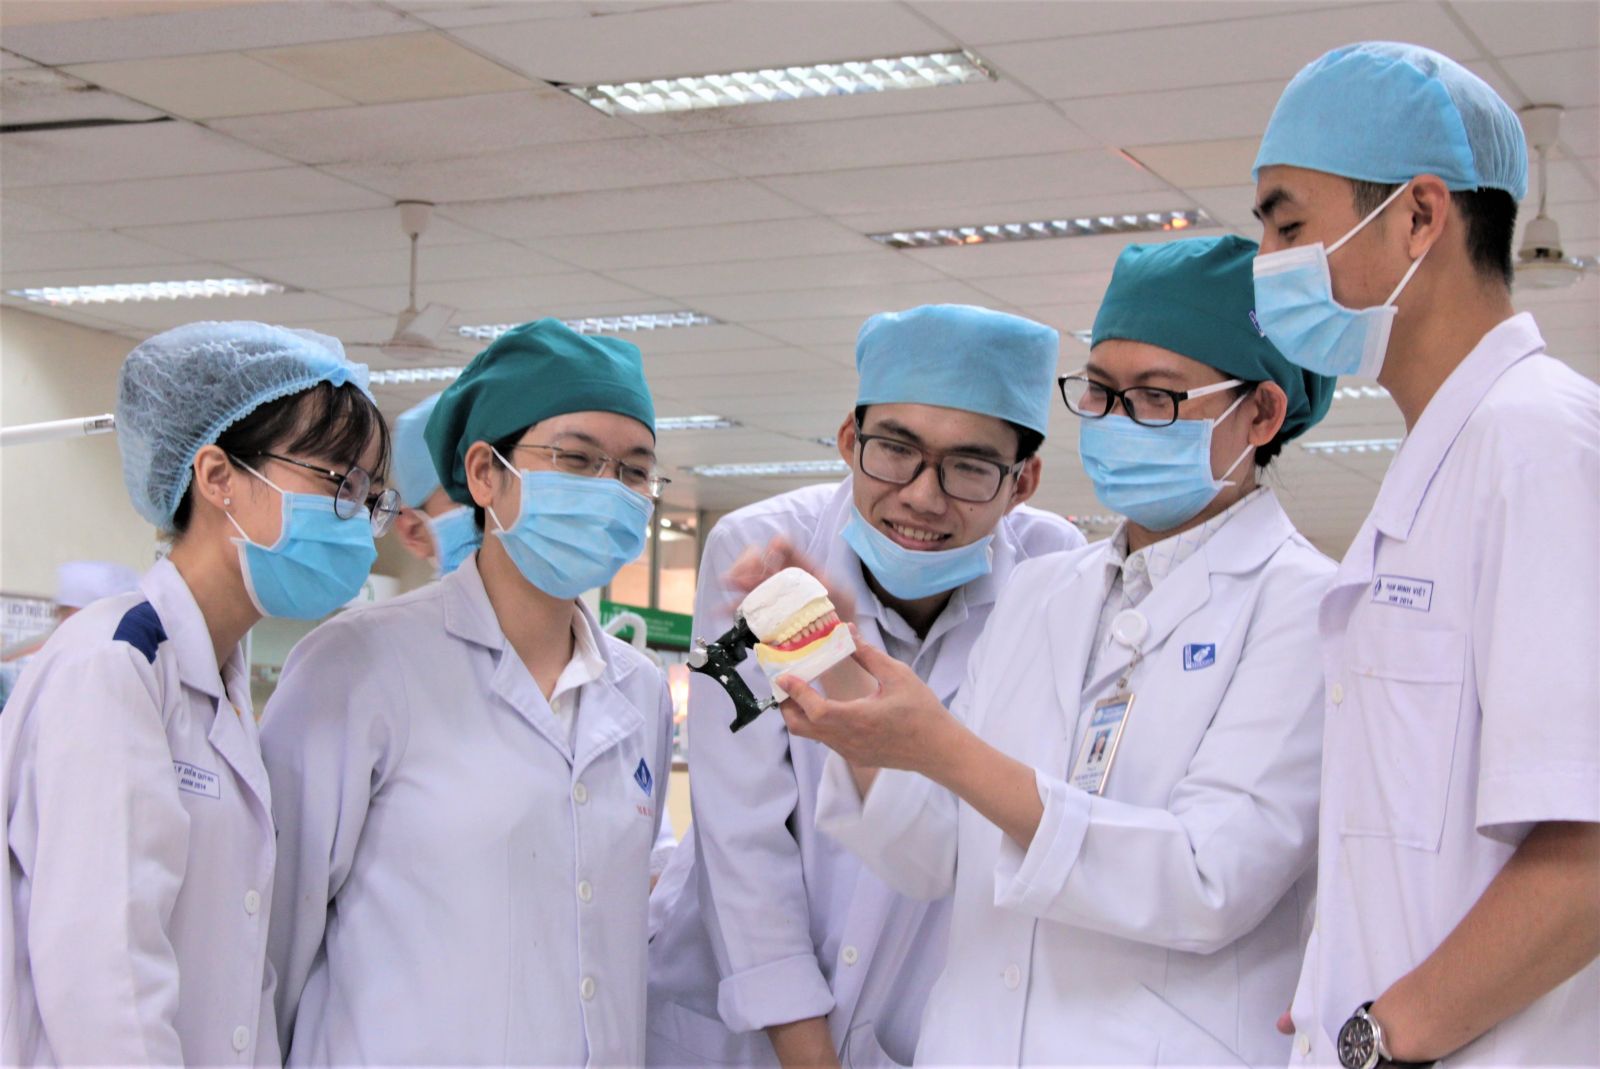 Tuyển sinh lớp trung cấp nha khoa tại Hà Nội